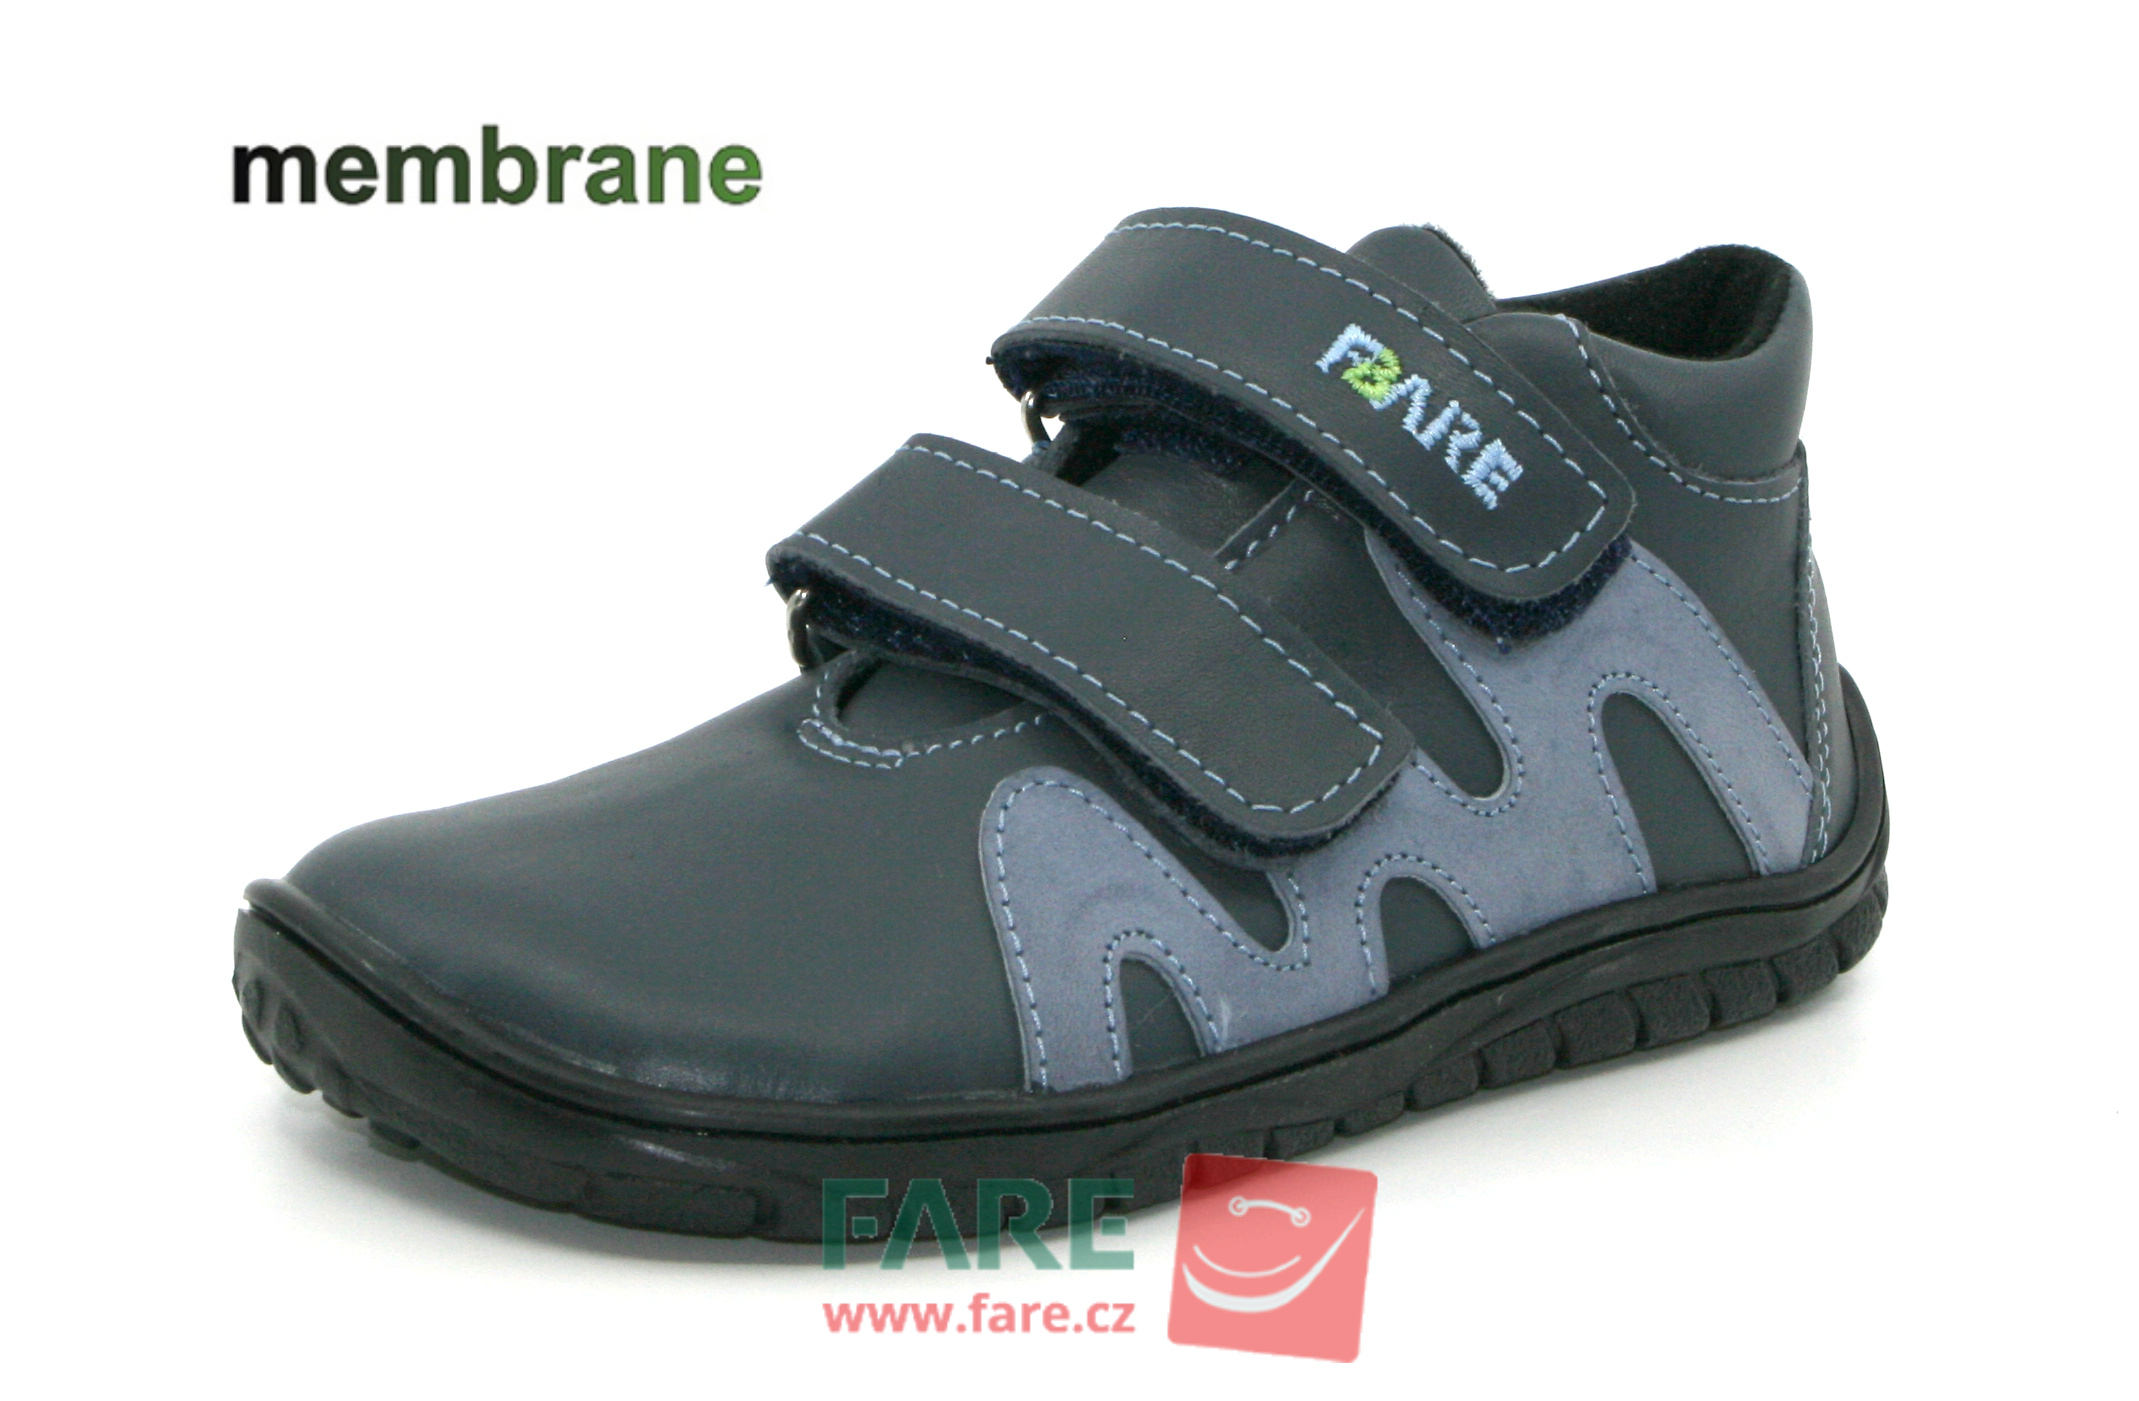 FARE BARE celoroční boty s membránou B5516161 Velikost obuvi: 28